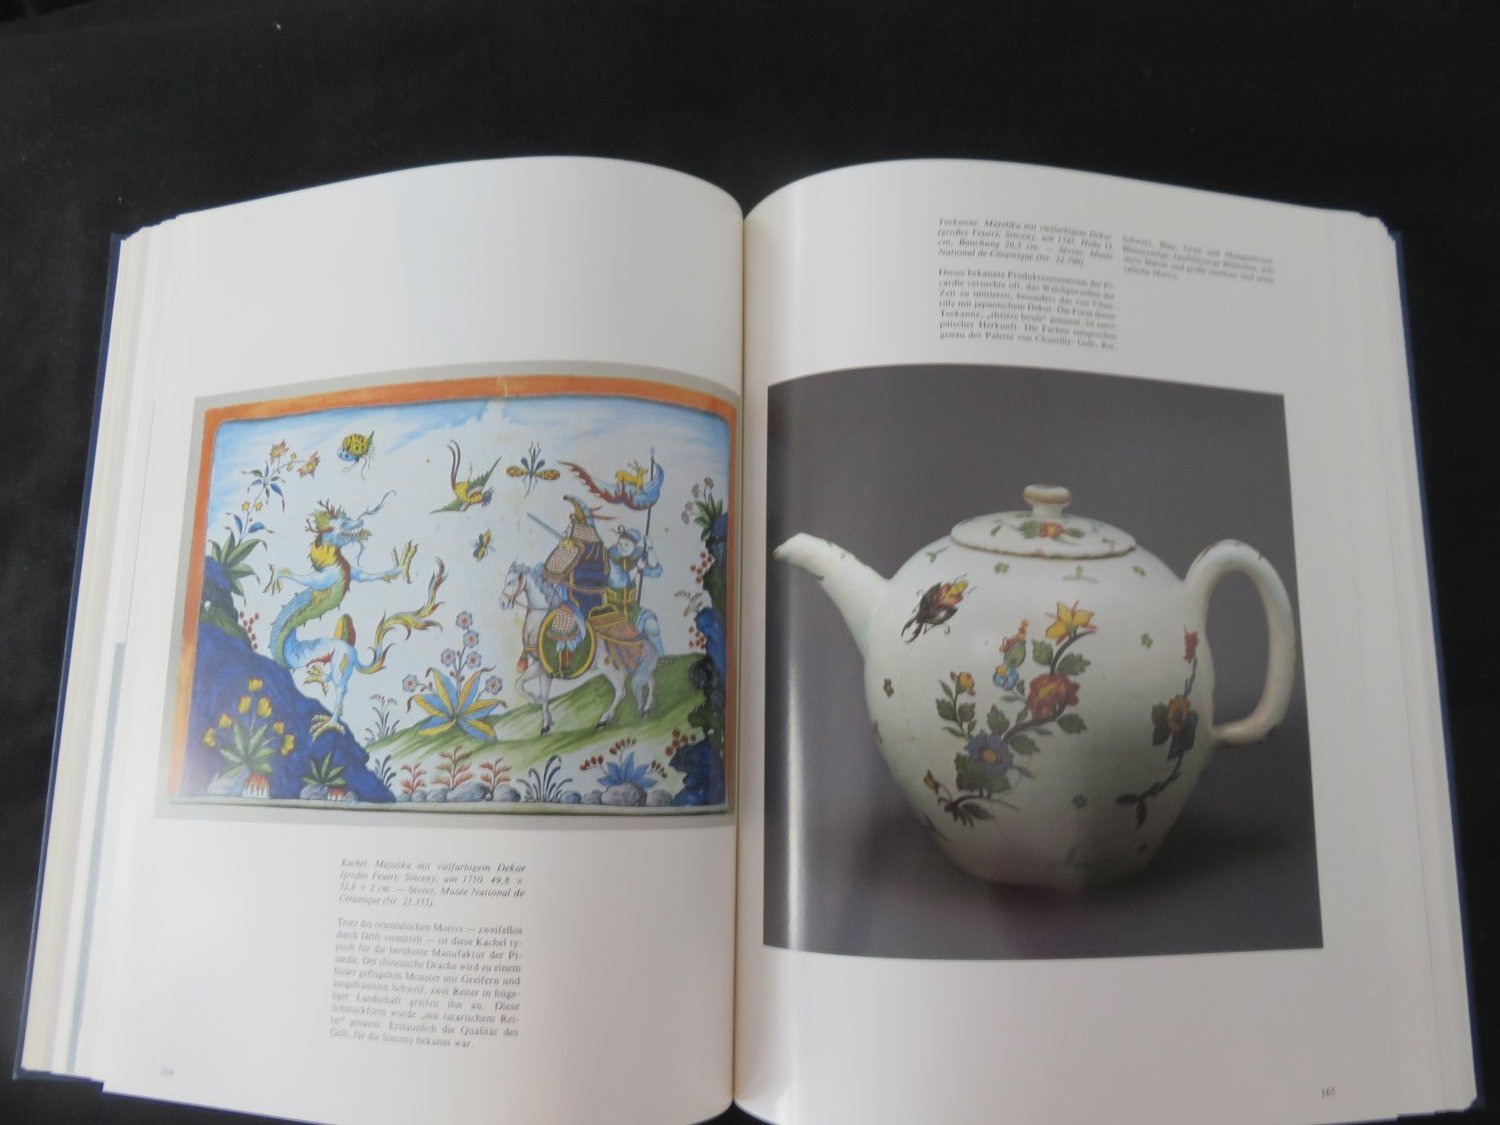 Glas uam. Fachbuch Meisterwerke europäischer Tierplastik aus Keramik Porzellan